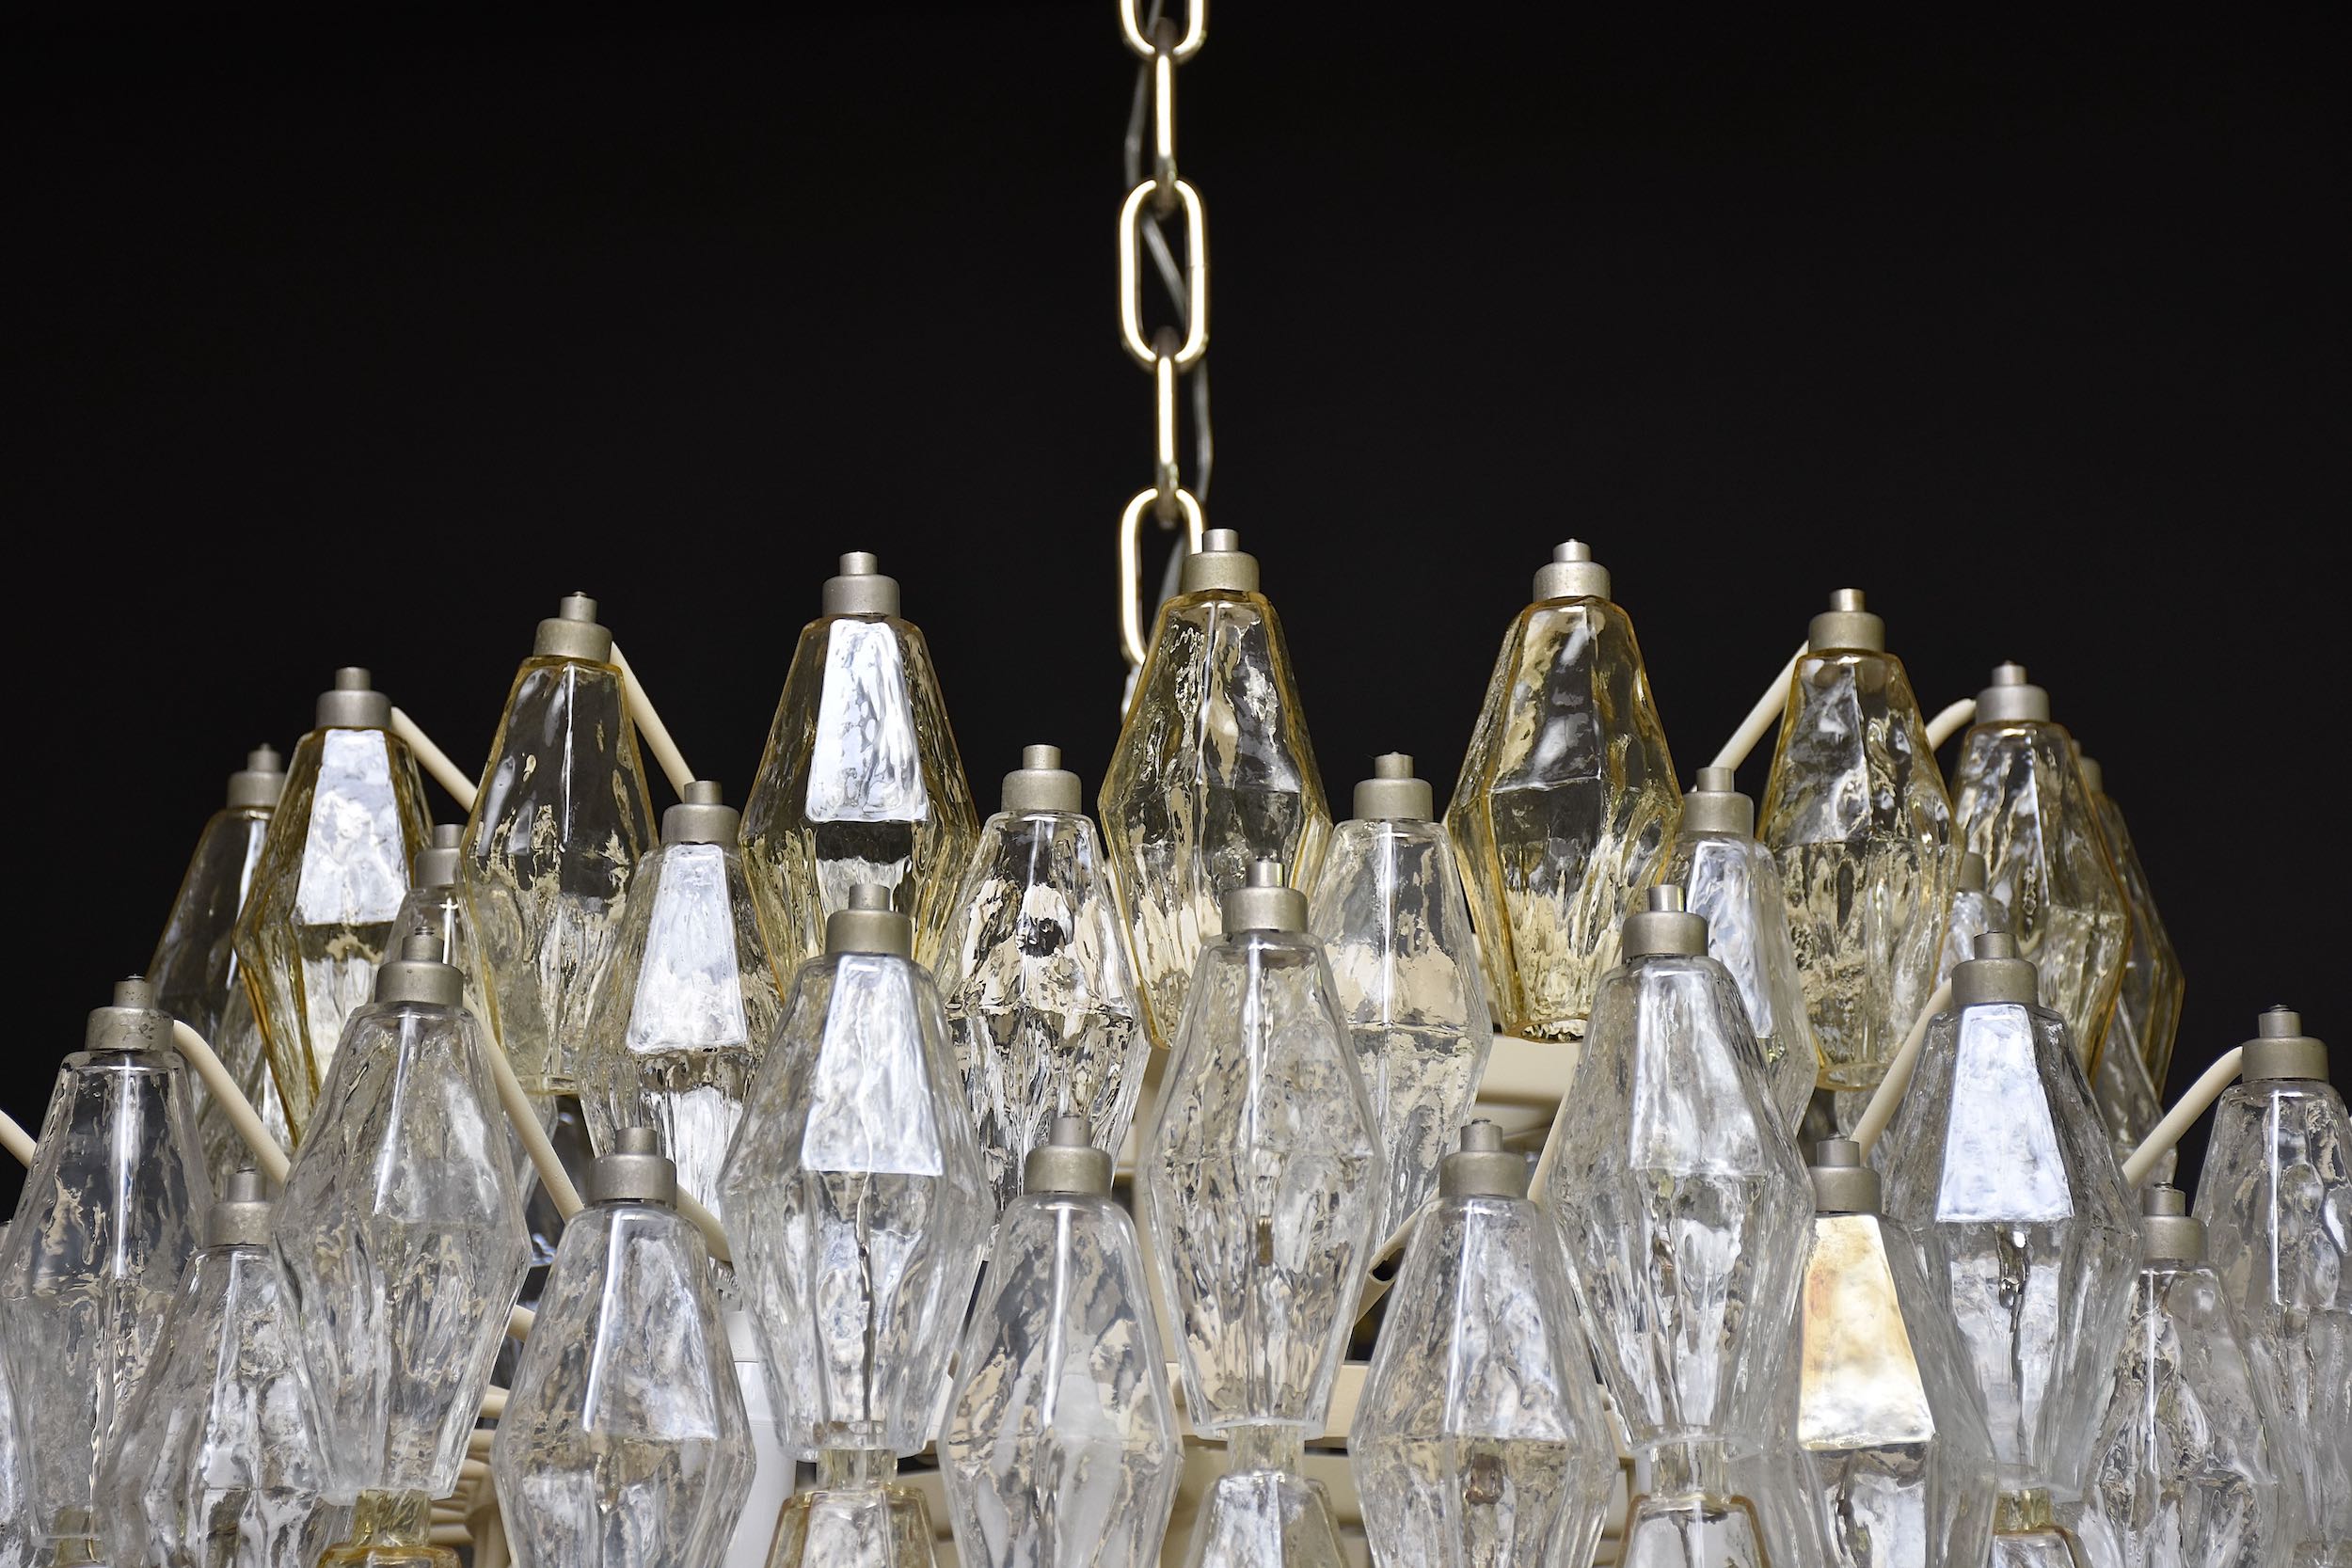 Large mid-century Murano chandelier 'Poliedri' by Carlo Scarpa for Venini